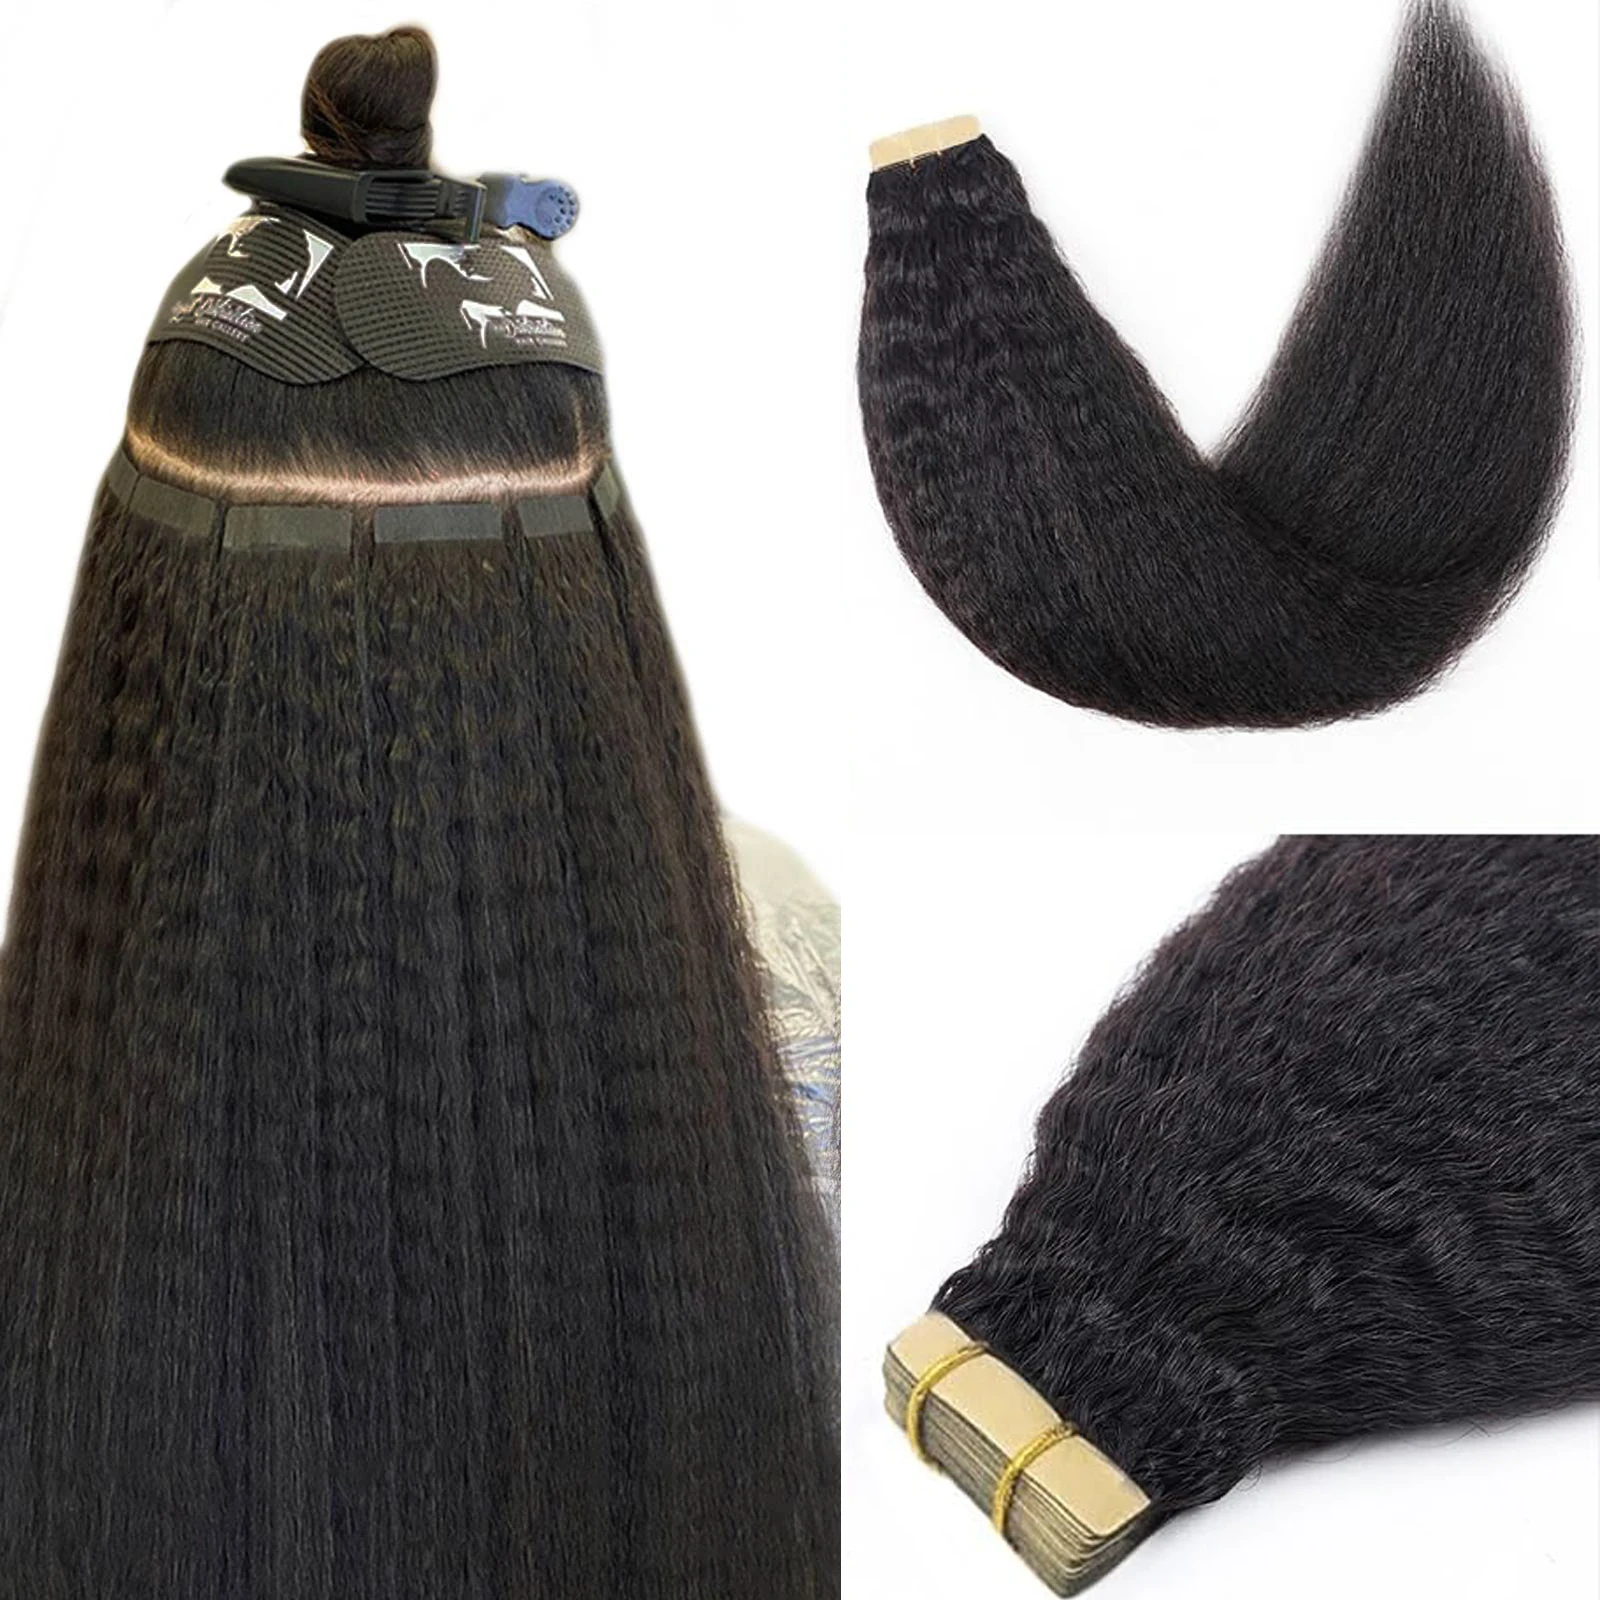 

Кудрявые прямые ленты для наращивания 20 шт. ленты в бразильском стиле Remy человеческие волосы 50 г # 1B 18 дюймов лента для наращивания волос настоящие человеческие волосы